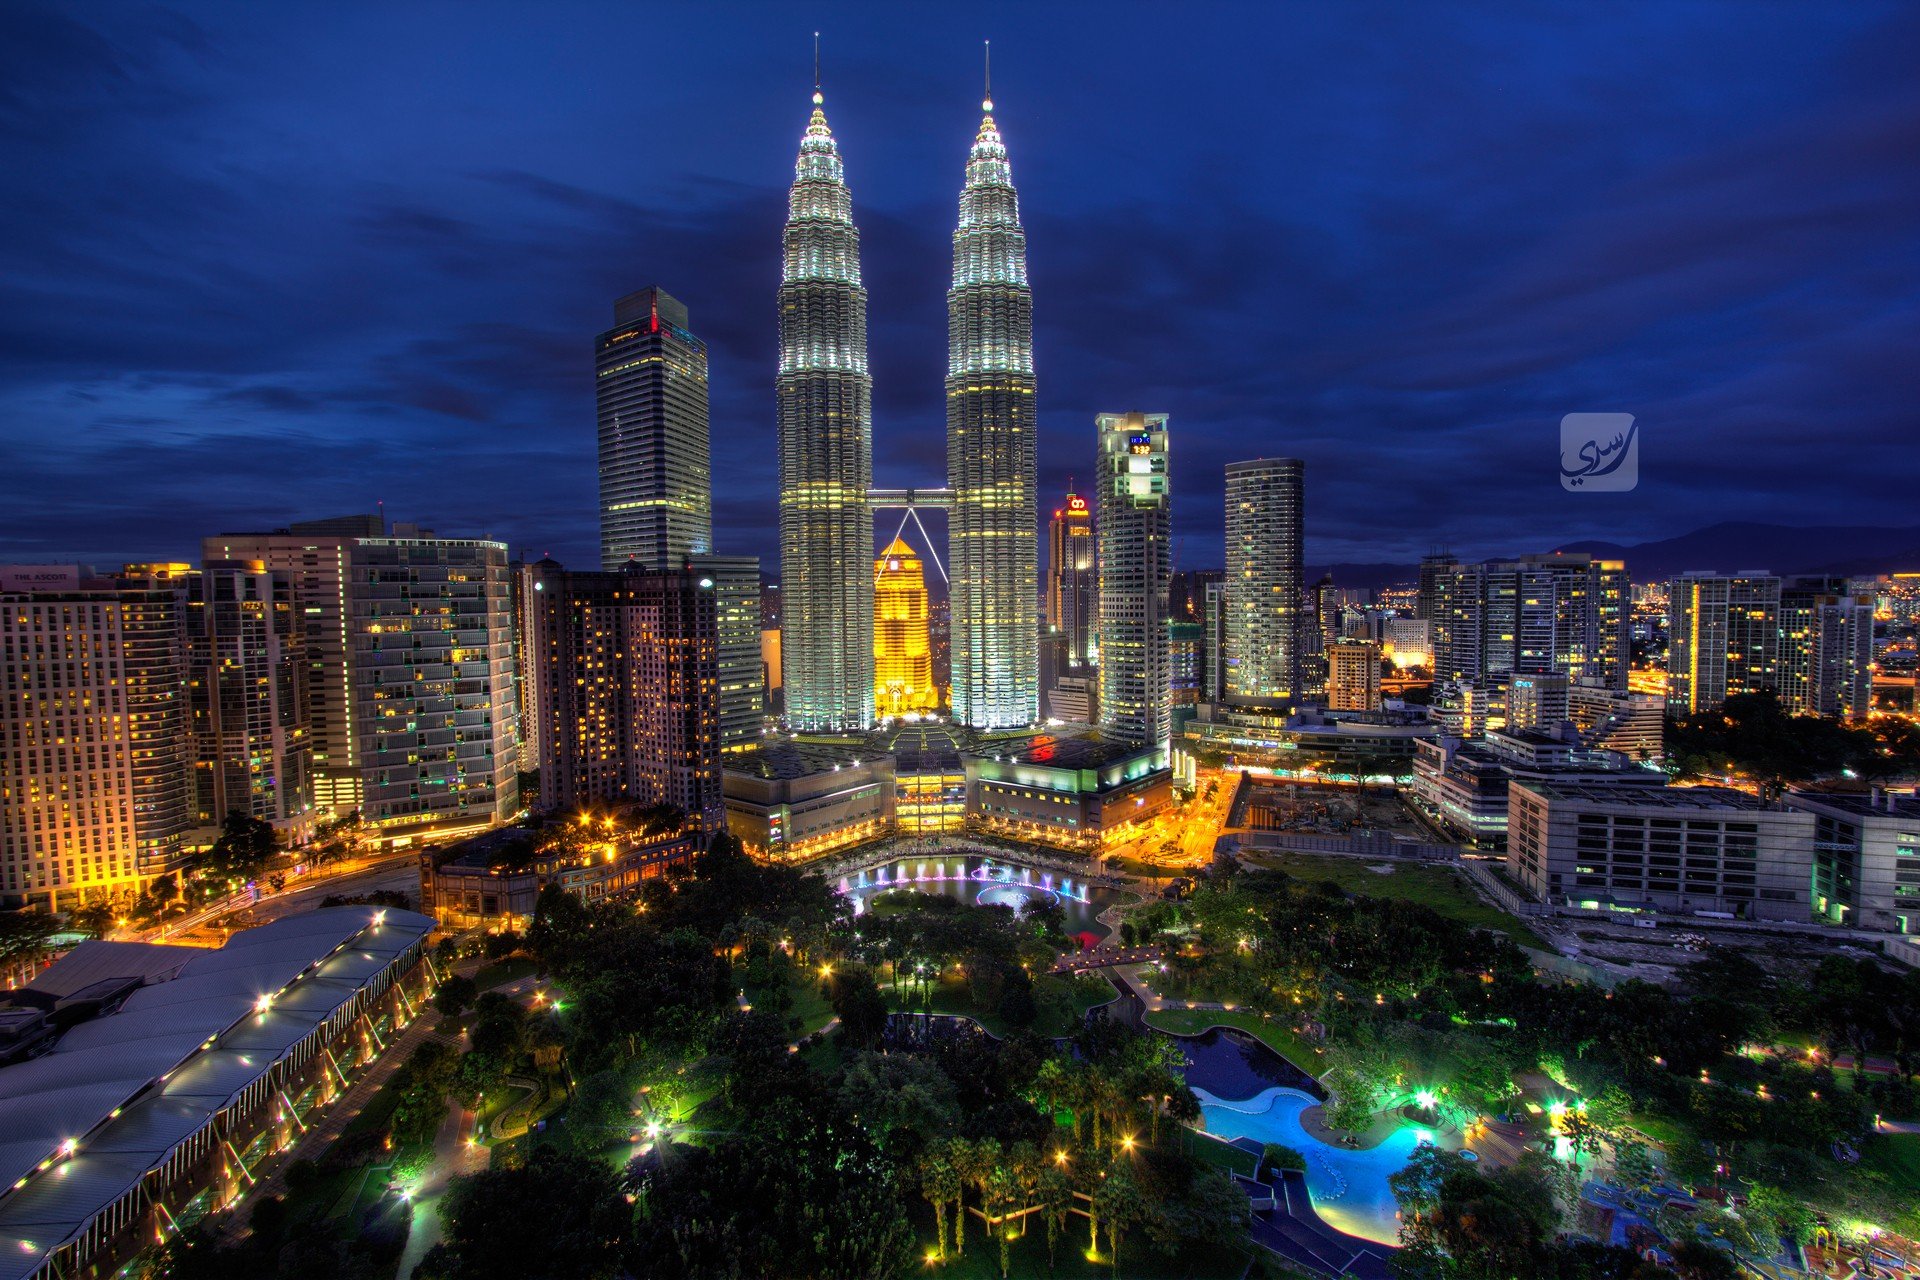 Wallpapers Malaysia night petronas towers on the desktop